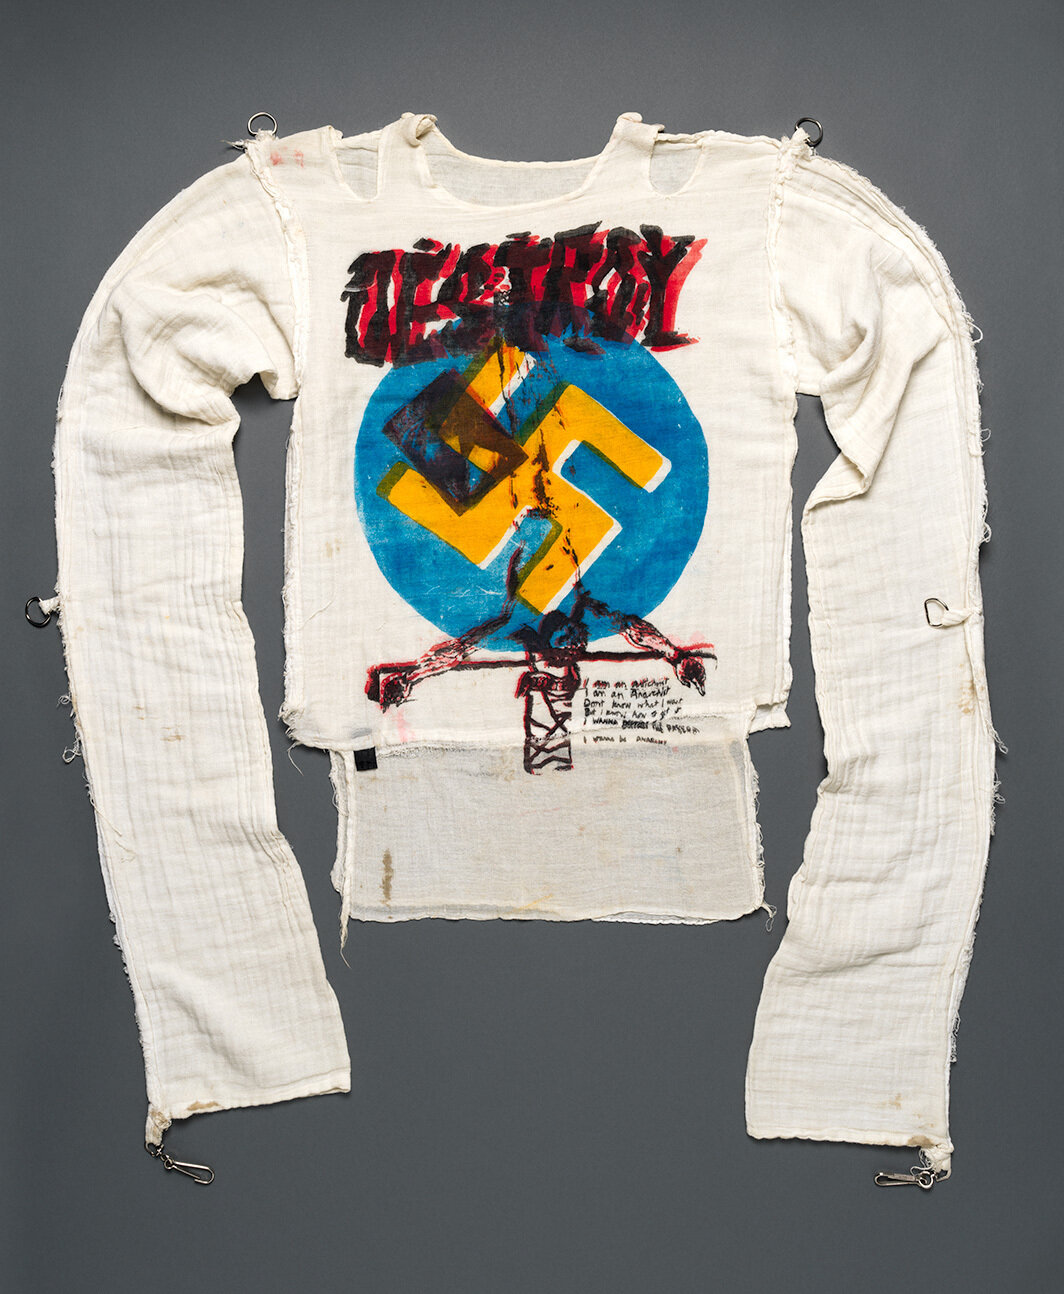 薇薇安·韦斯特伍德和马尔科姆·麦克拉伦，上衣，1977，棉布上丝网印刷，金属. 来自“煽动分子”商店. 